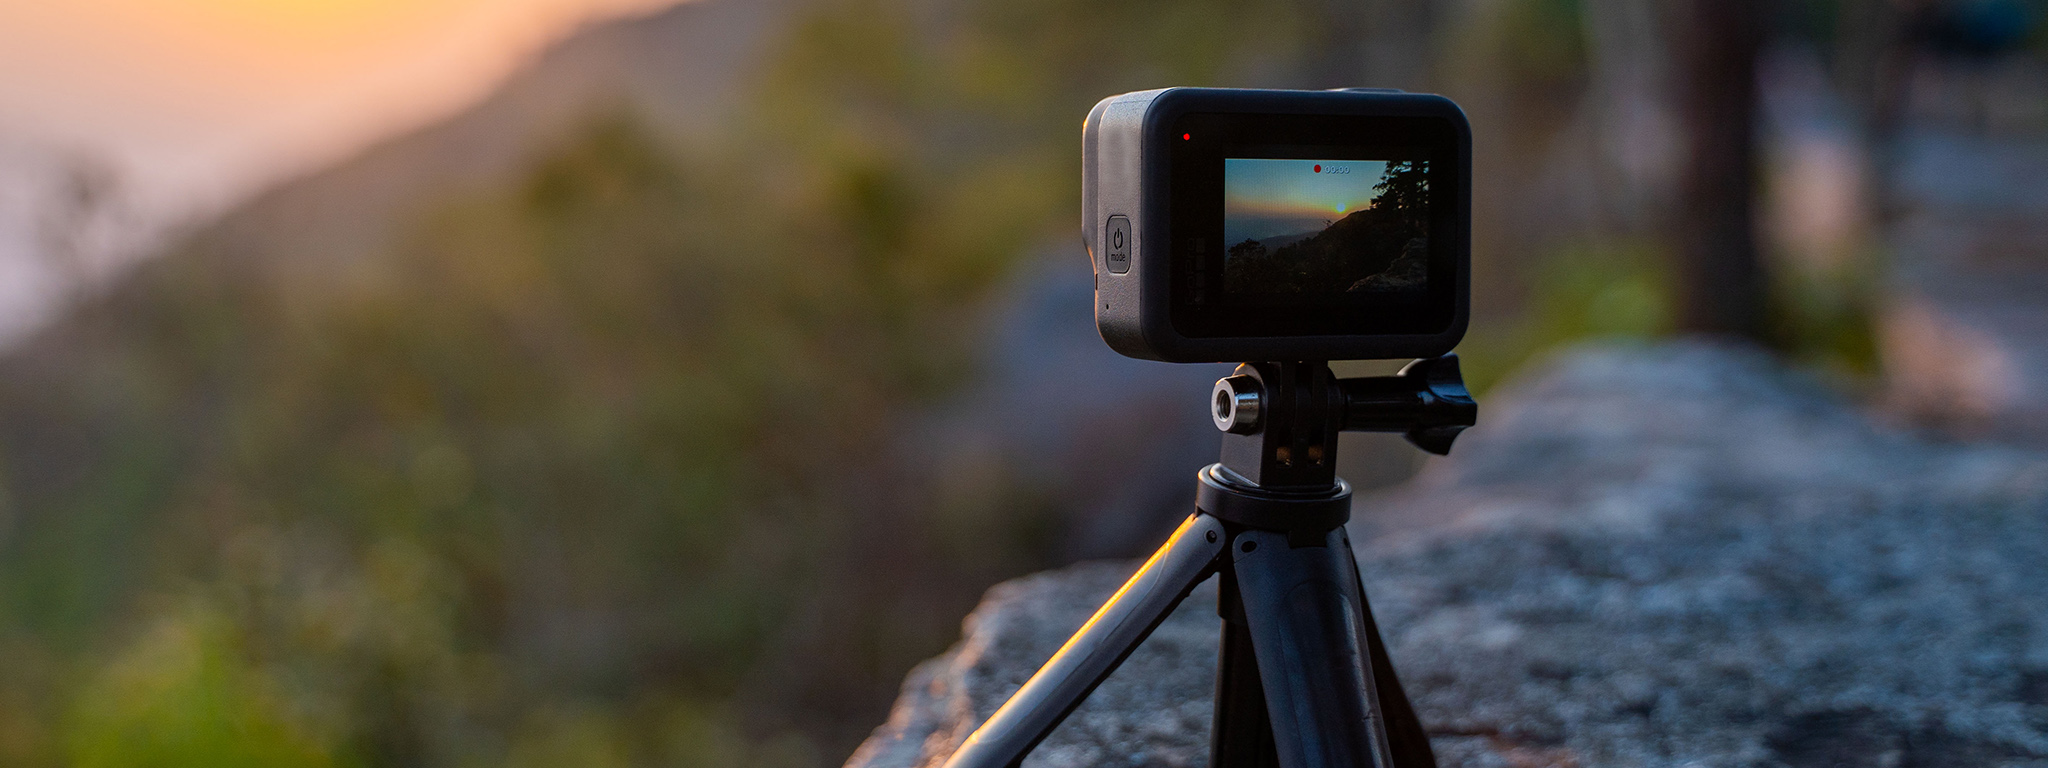 Video di un tramonto in time lapse effettuato con una telecamera GoPro